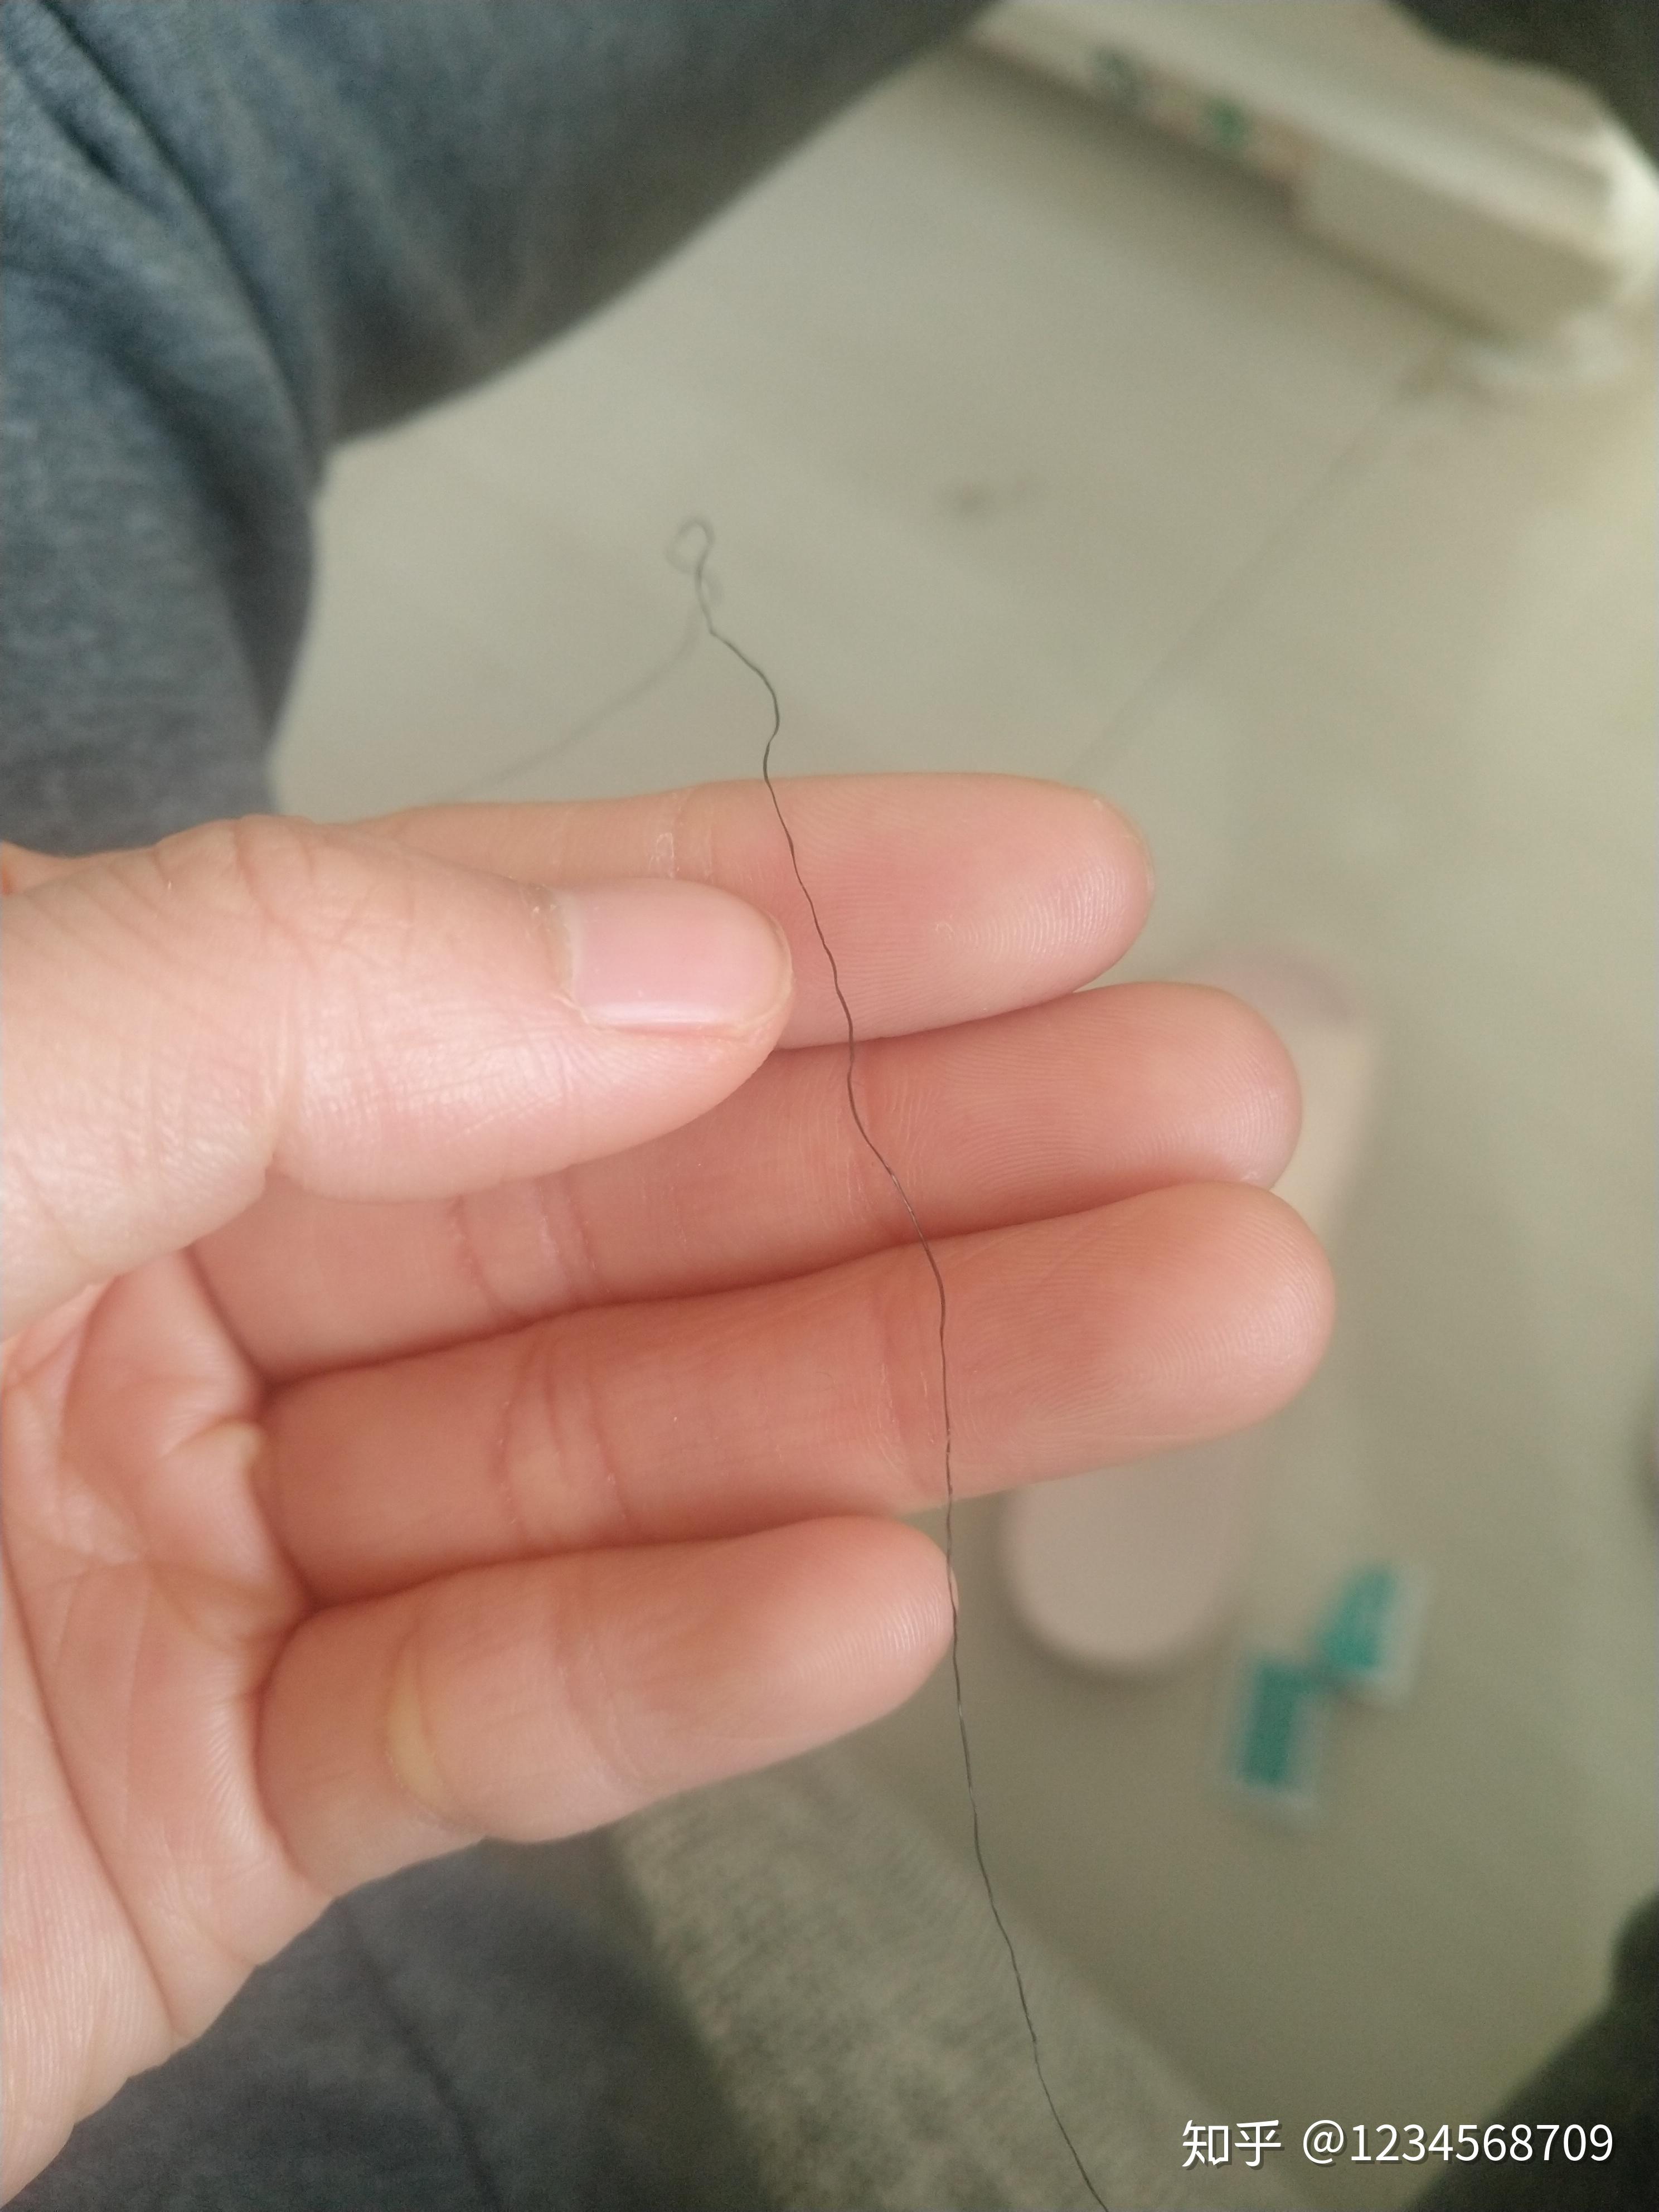 为什么我会有部分头发的发尾像钢丝一样弯曲是什么原因造成的属于沙发